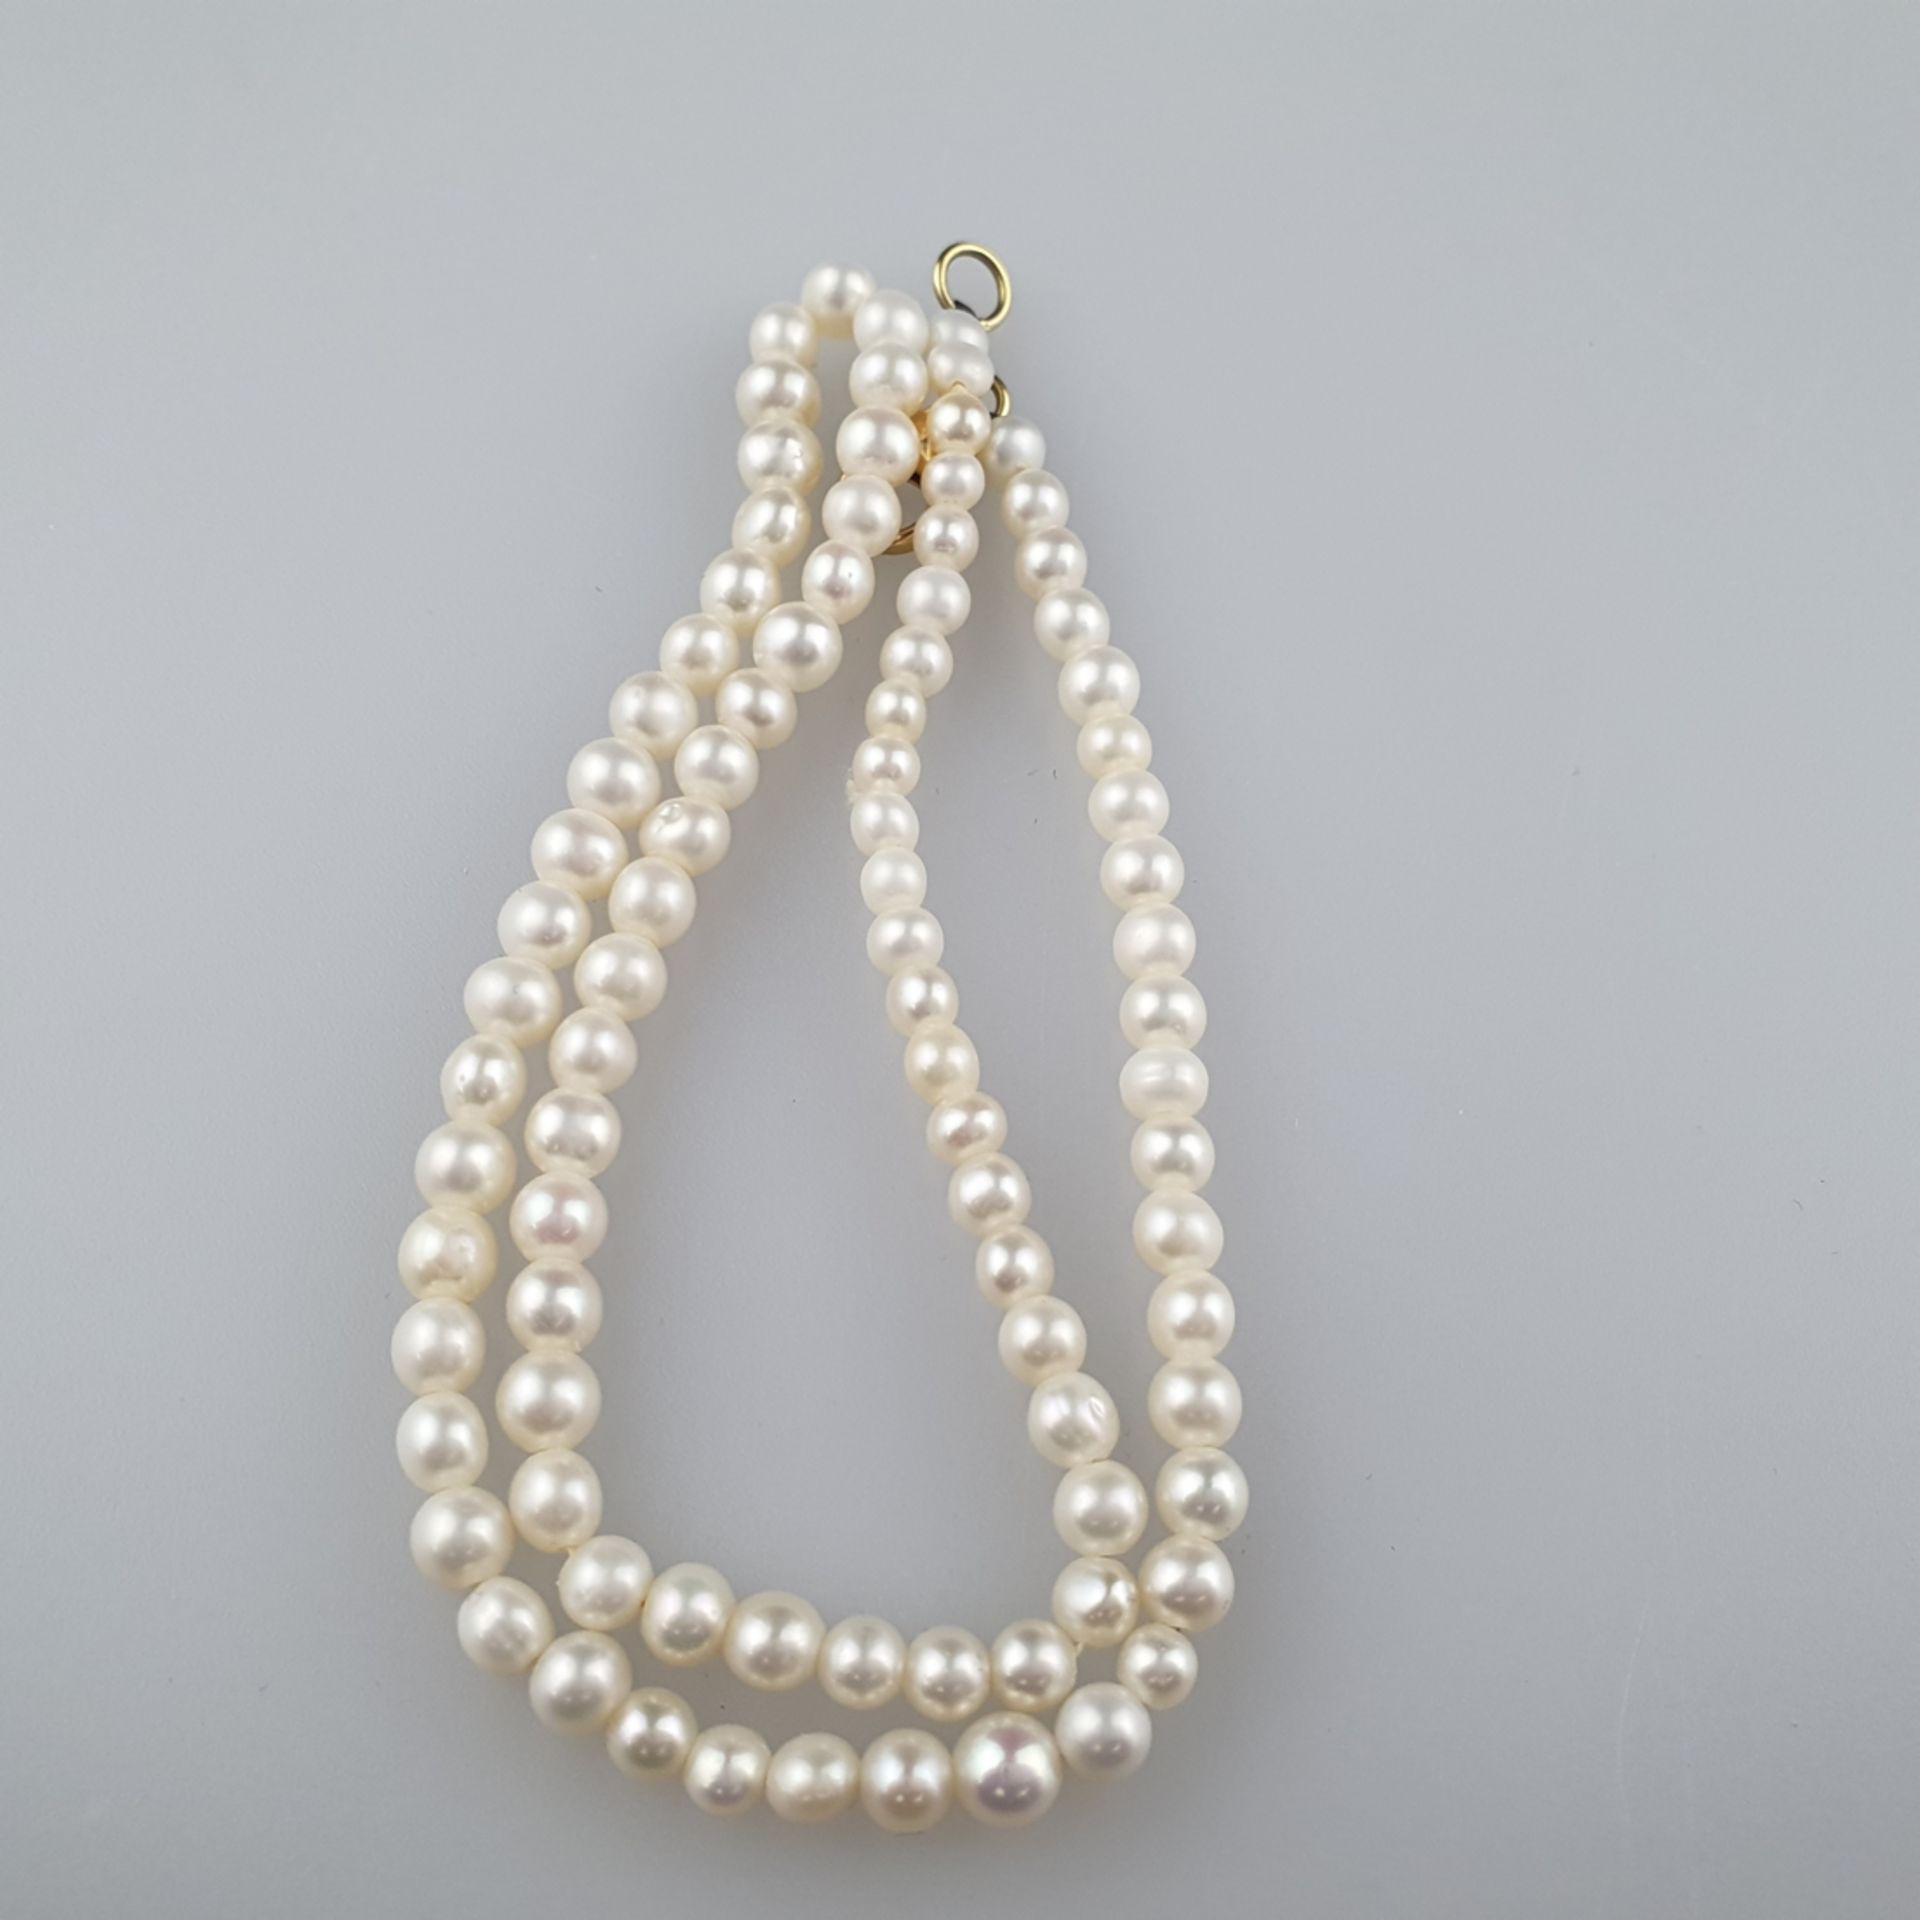 Perlenkette mit Goldverschluss - weiße Perlen im Verlauf, Dm. bis ca. 4mm, teils unregelmäßig rund - Image 4 of 4